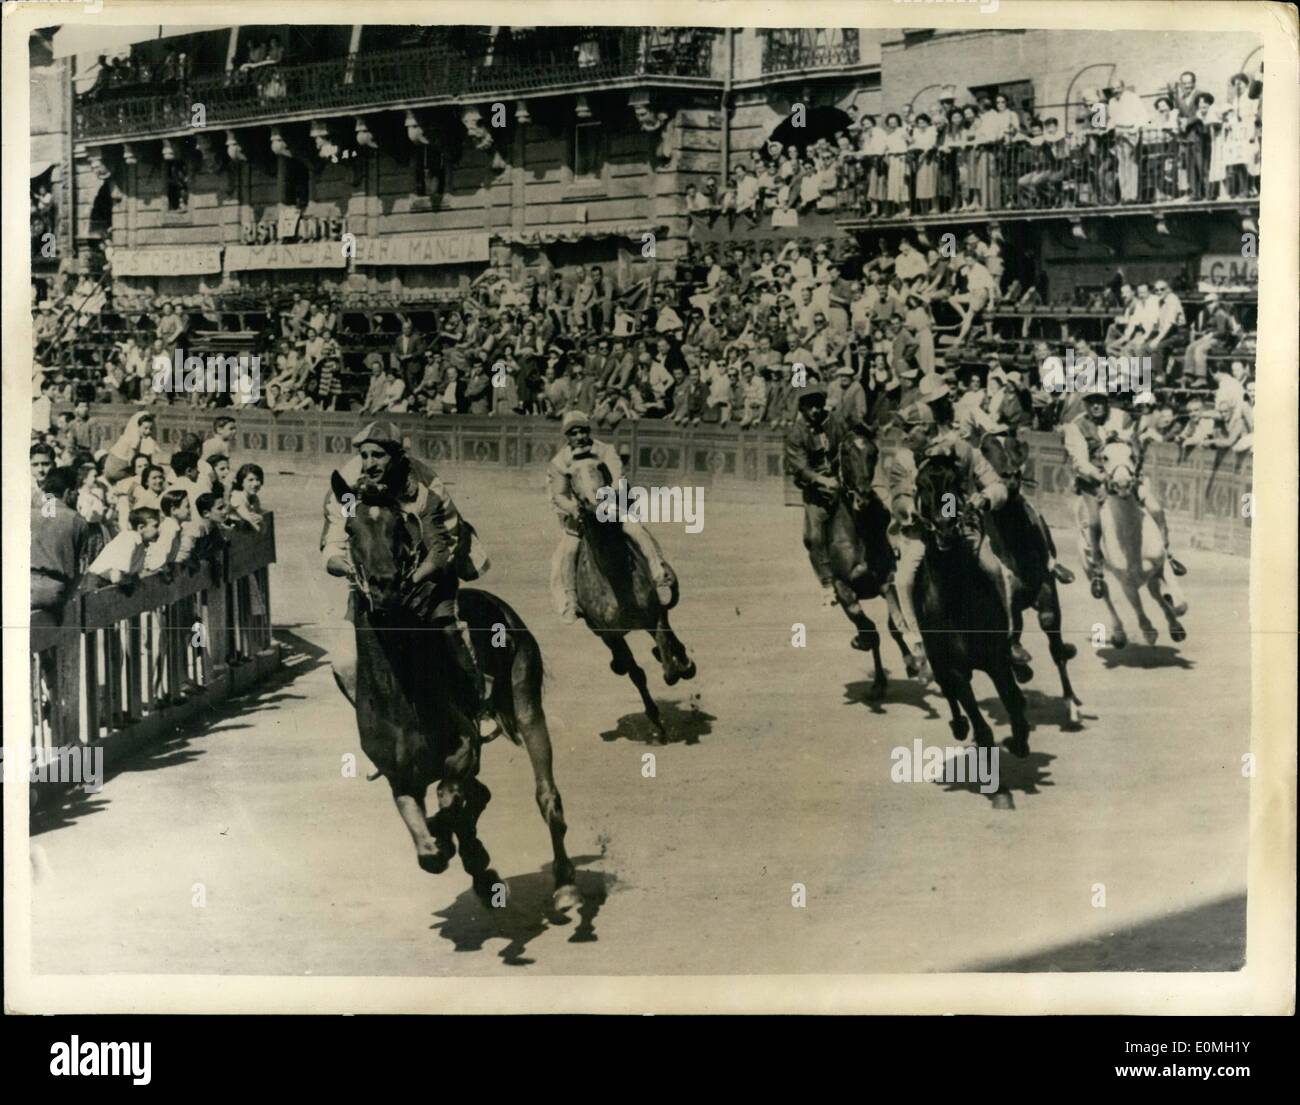 Lug. 07, 1955 - medievale corsa di cavalli a Siena. : L'antichissimo Palio di Siena, Italia, si è tenuto recentemente nella piazza principale, campo Foto Stock